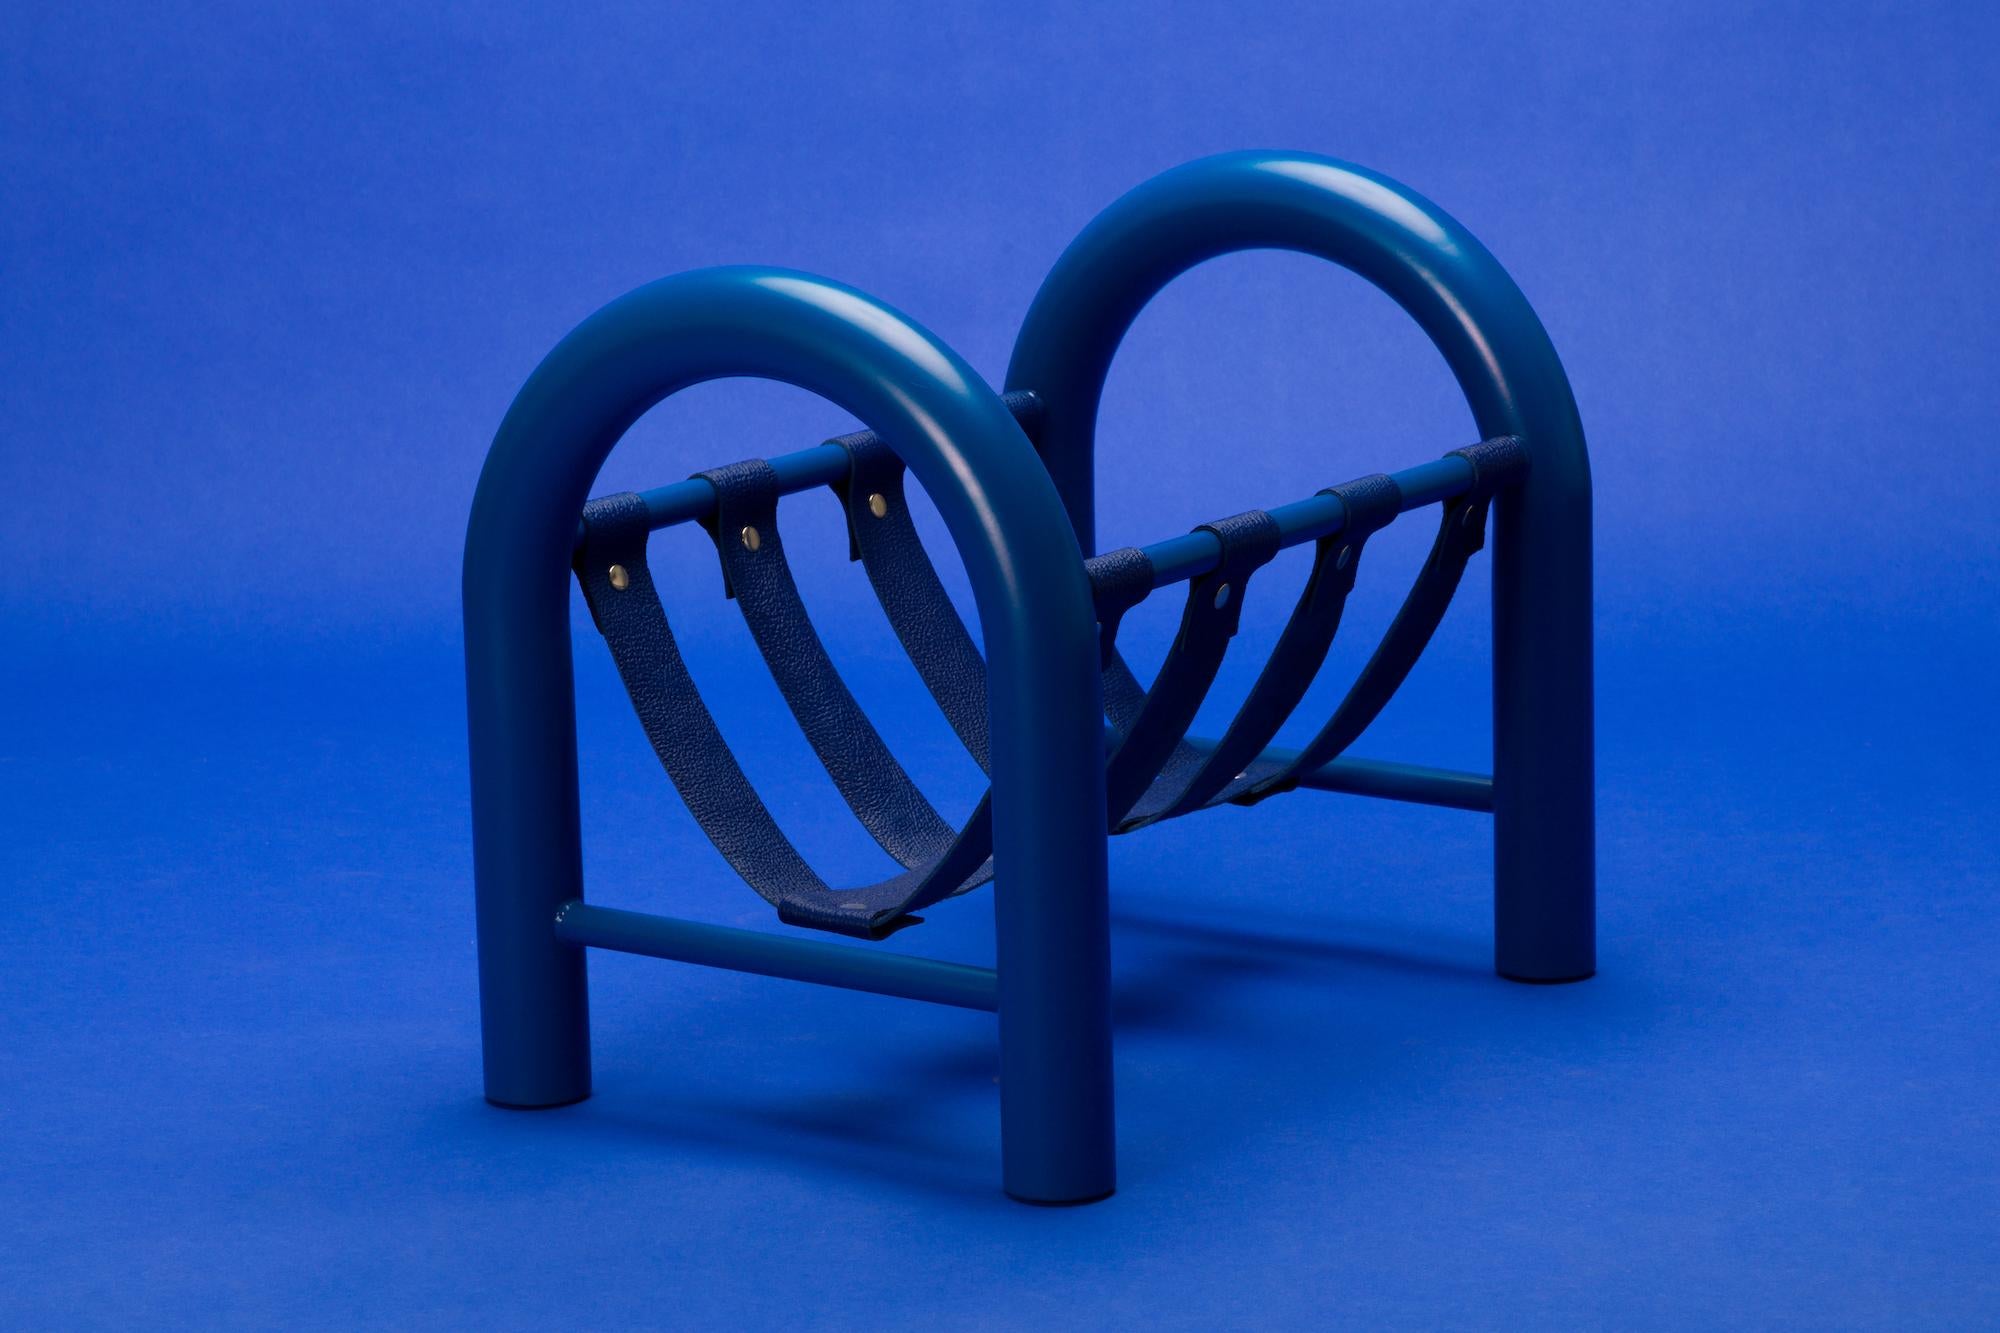 Zeitschriftenständer aus Stahlrohr von Another Human, blau, limitierte Auflage (Pulverbeschichtet)